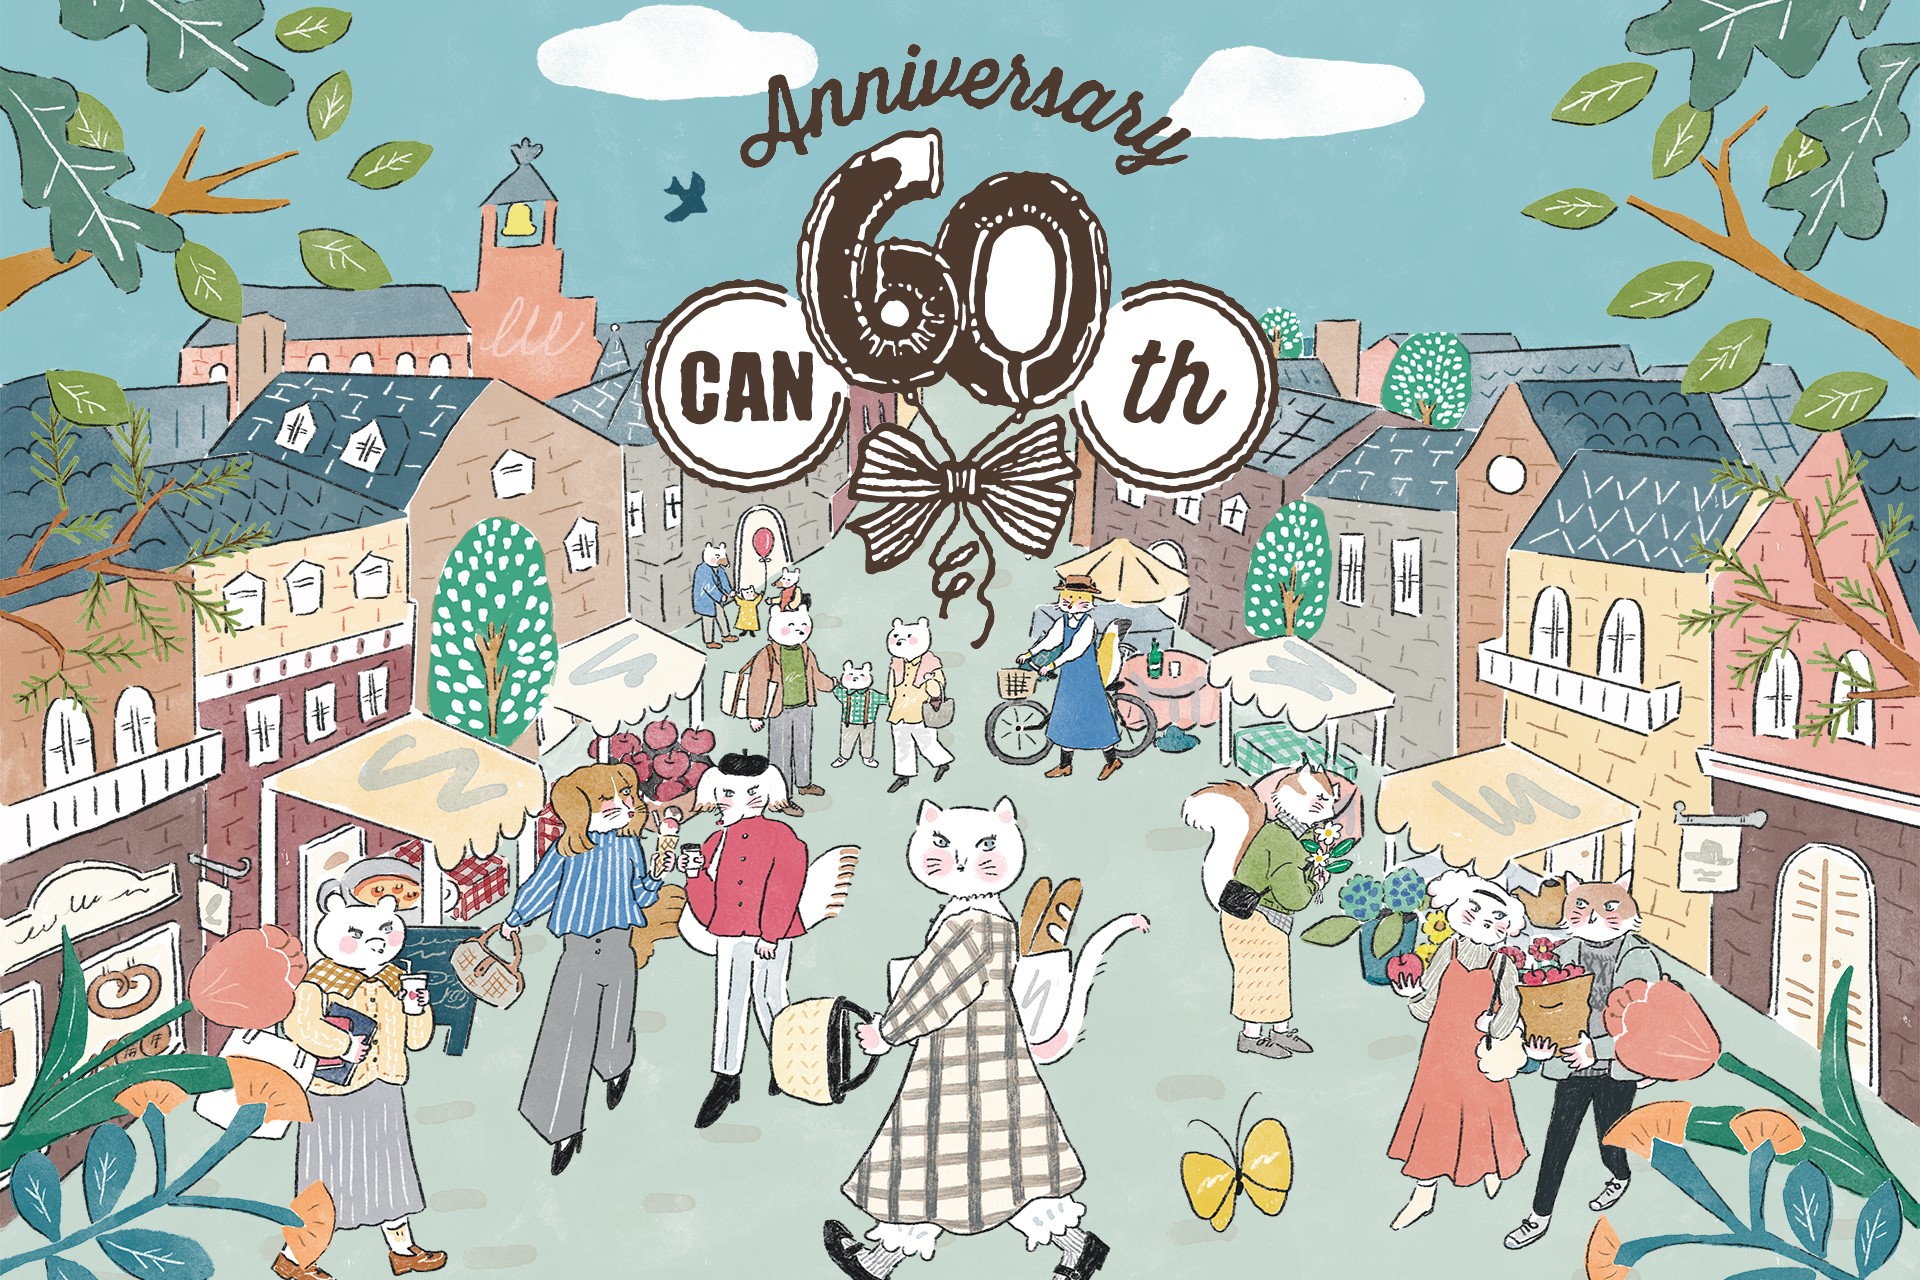 株式会社キャン設立60周年『CAN 60th Anniversary』記念サイトをオープン